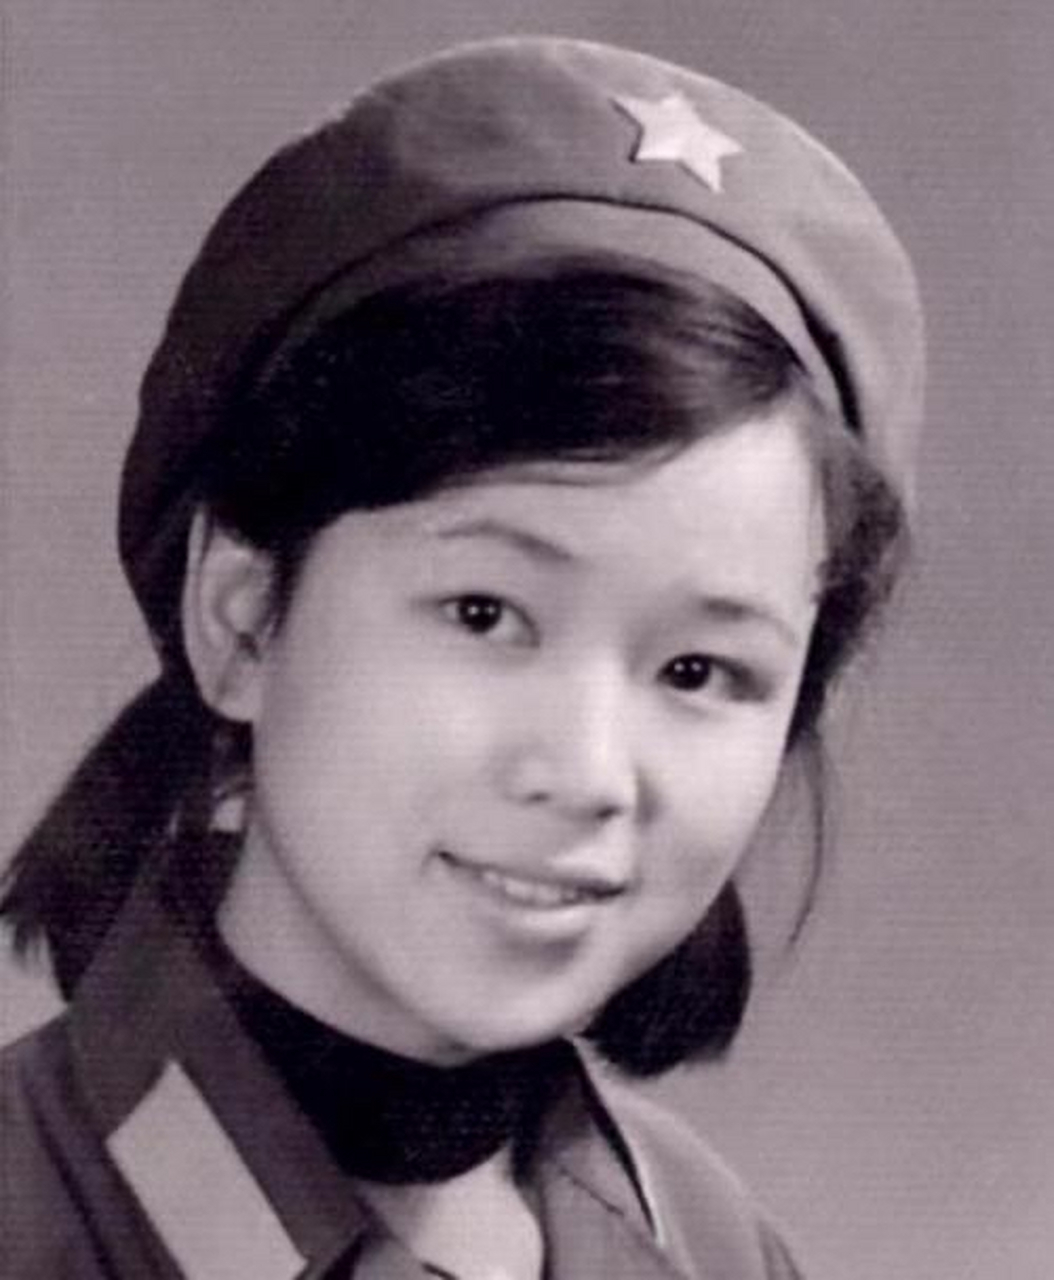 1979年老山前线一位飒爽英姿的通讯女兵留下的照片,她身着65式军装